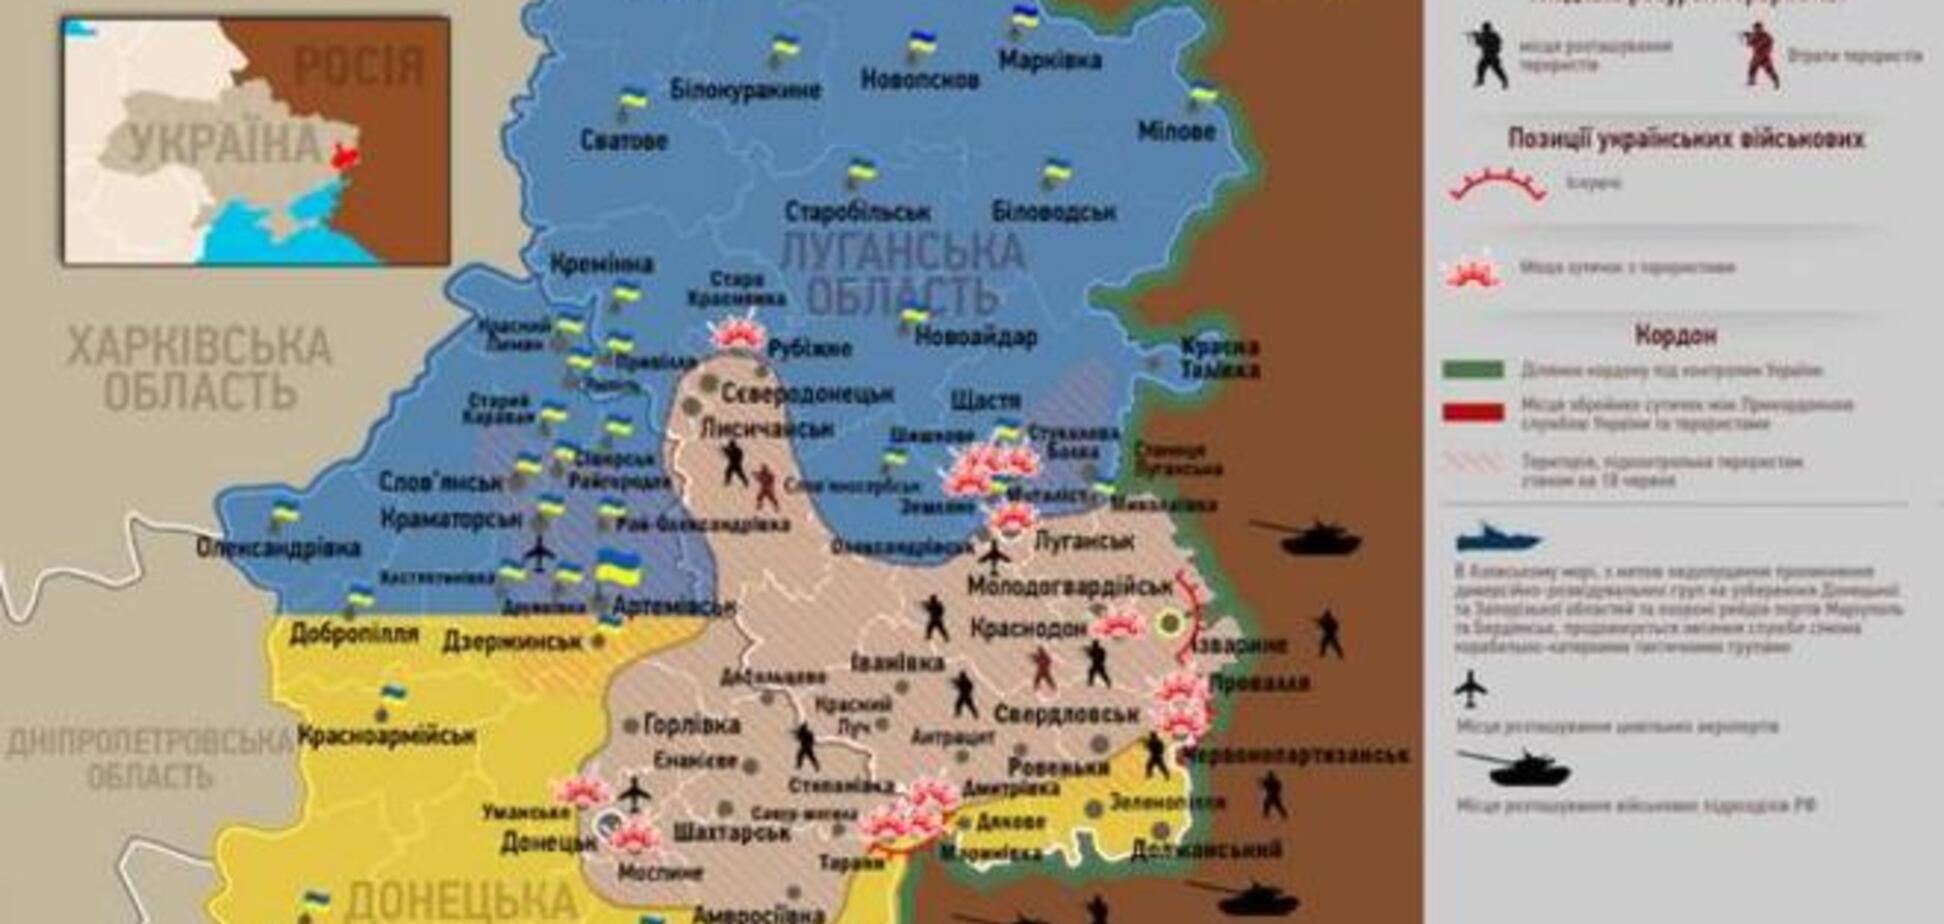 Опублікована актуальна карта боїв в зоні АТО - 17 липня 2014